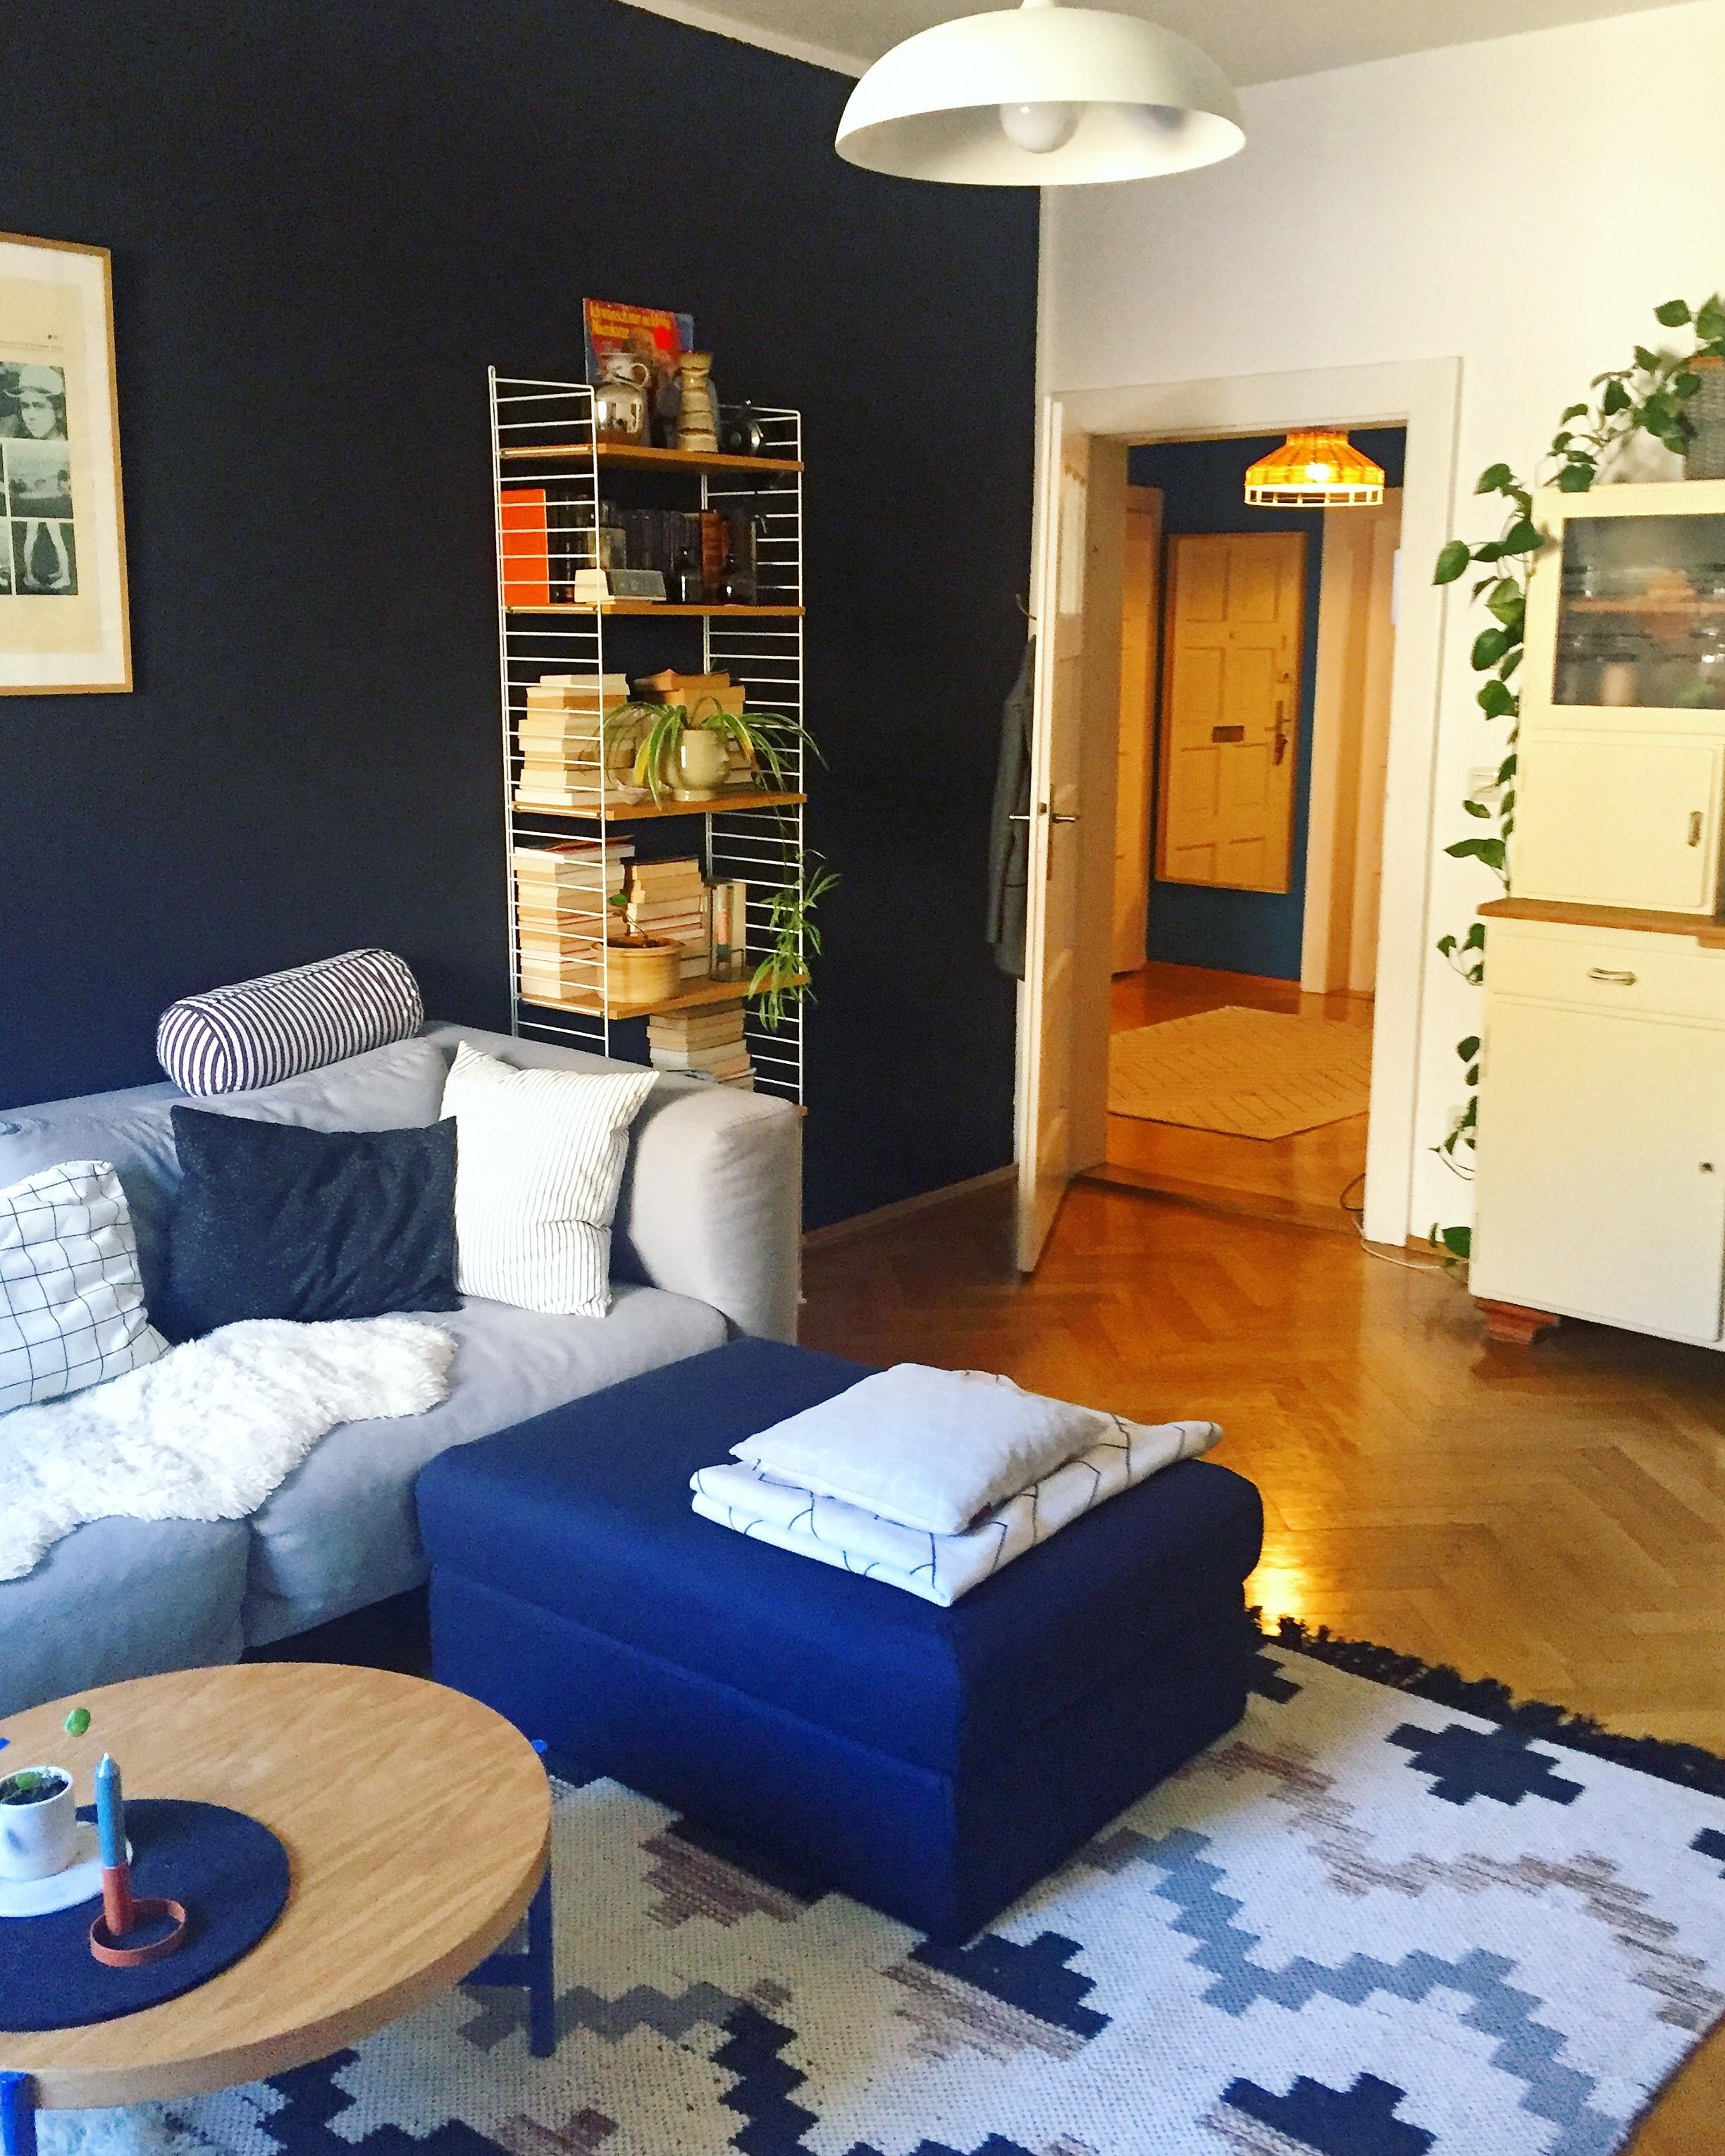 #hocker #couch #wohnzimmer #gemütlich #schwarzewand #altbau